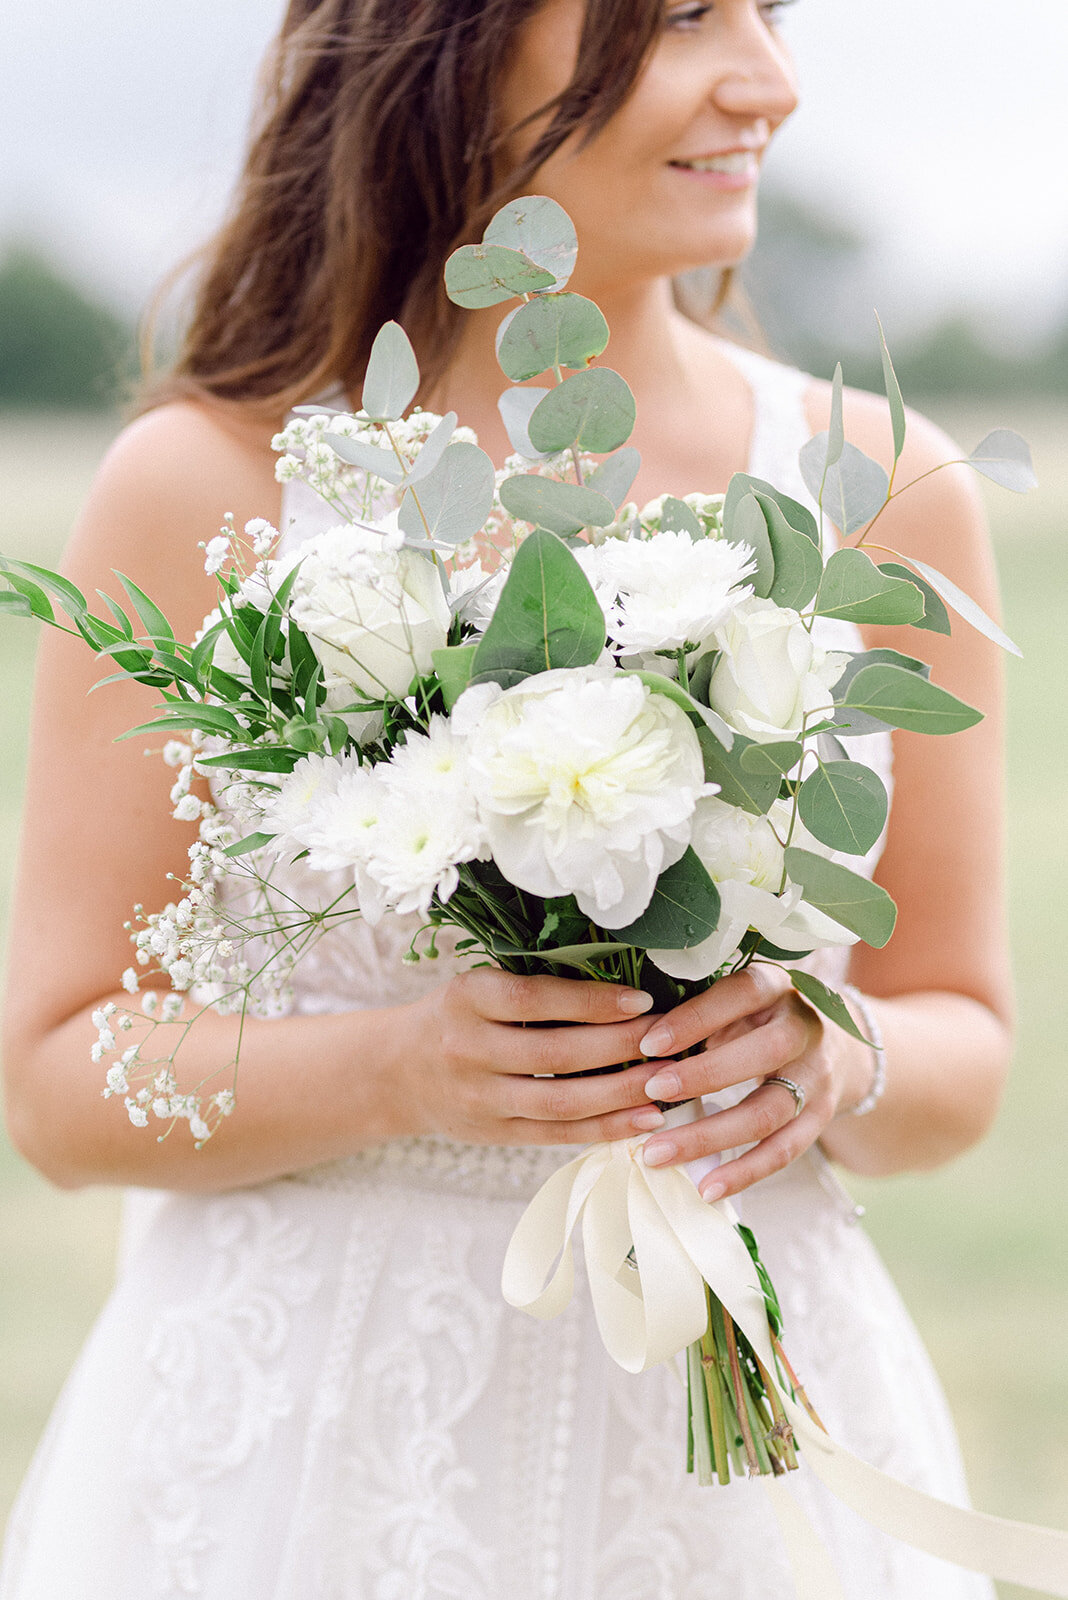 Detail Photo of the brides bouquet